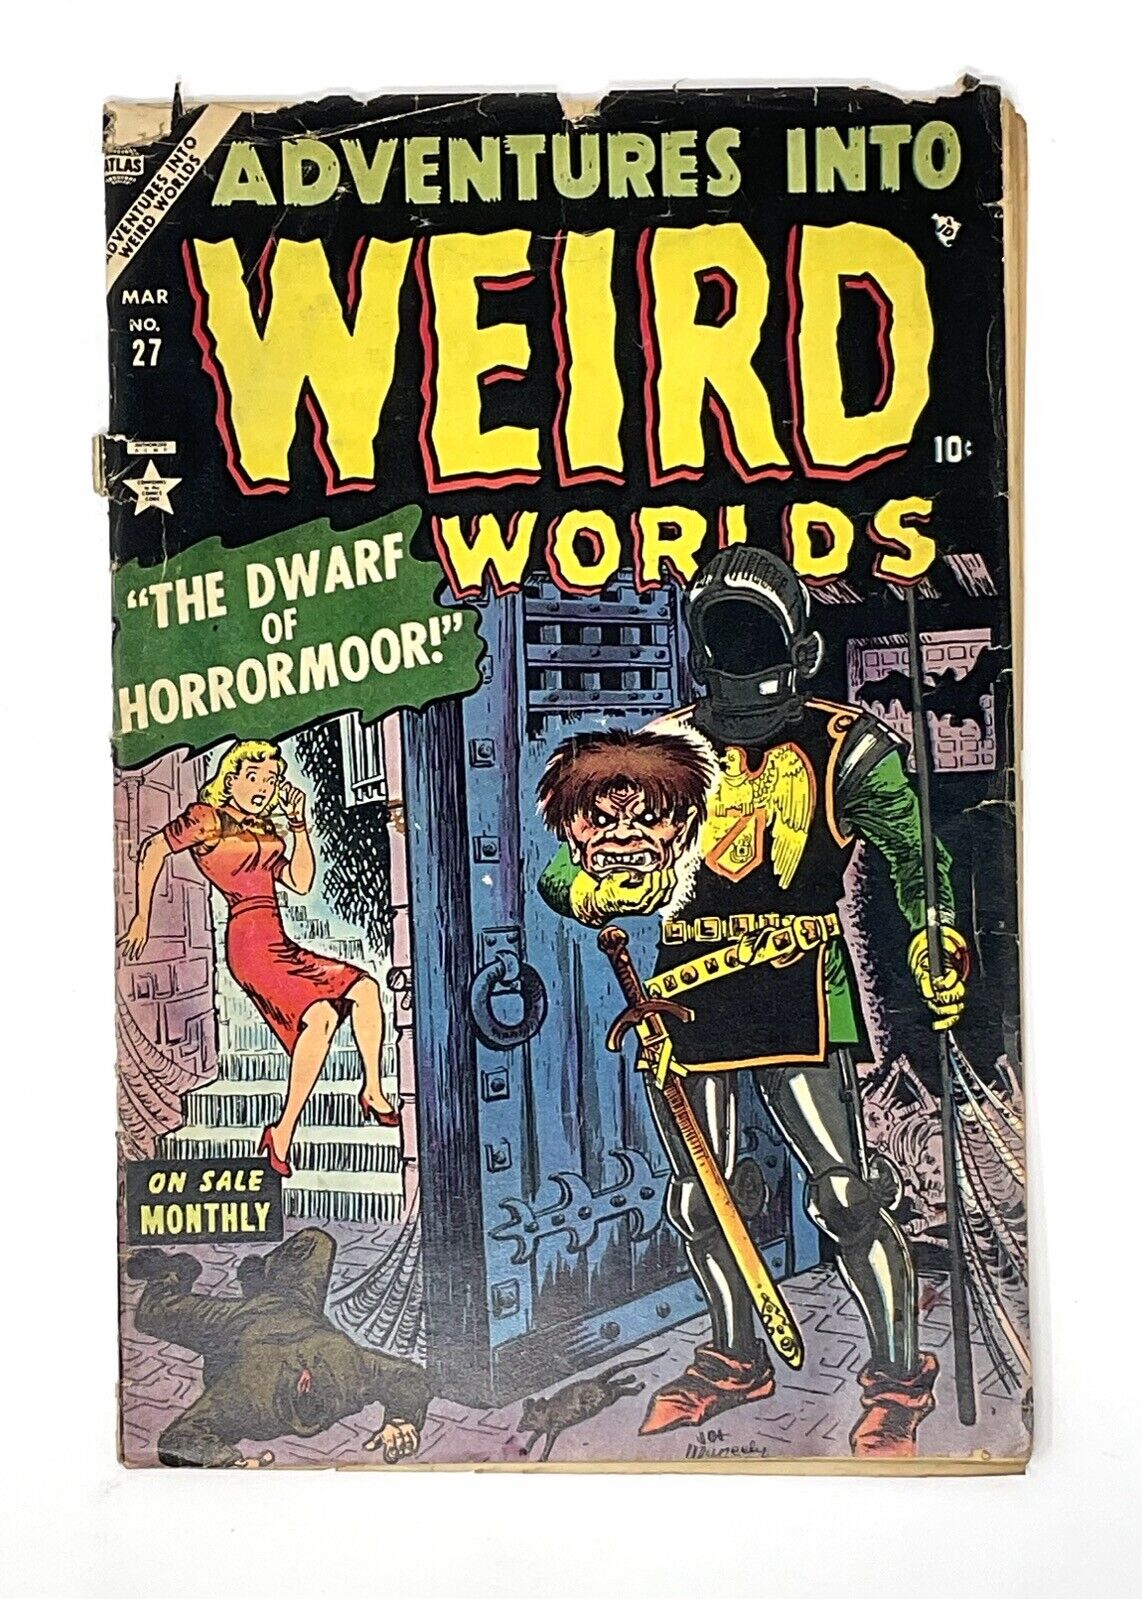 Adventures Into Weird Worlds #27 (March 1954)